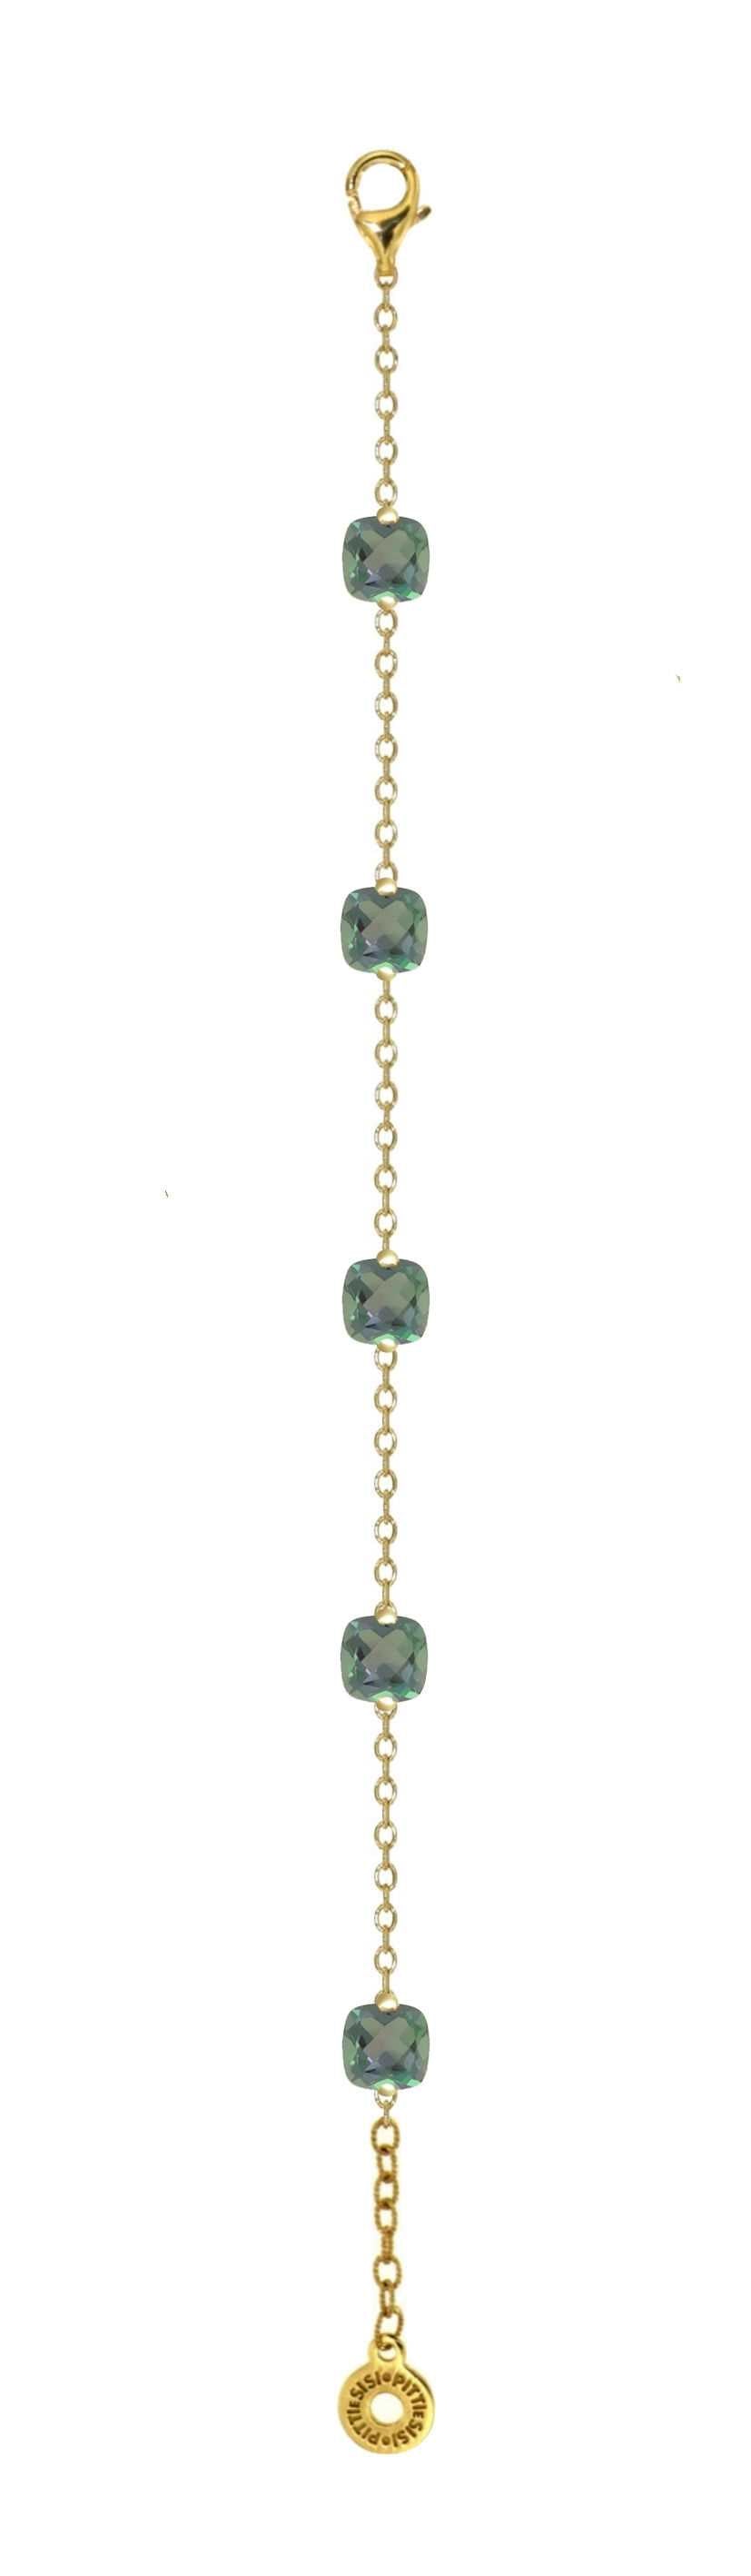 Pitti и Sisi браслет Радуга стерлингового серебра 925 отделка PVD желтого золота зеленый кварцевый BR 9590G/069